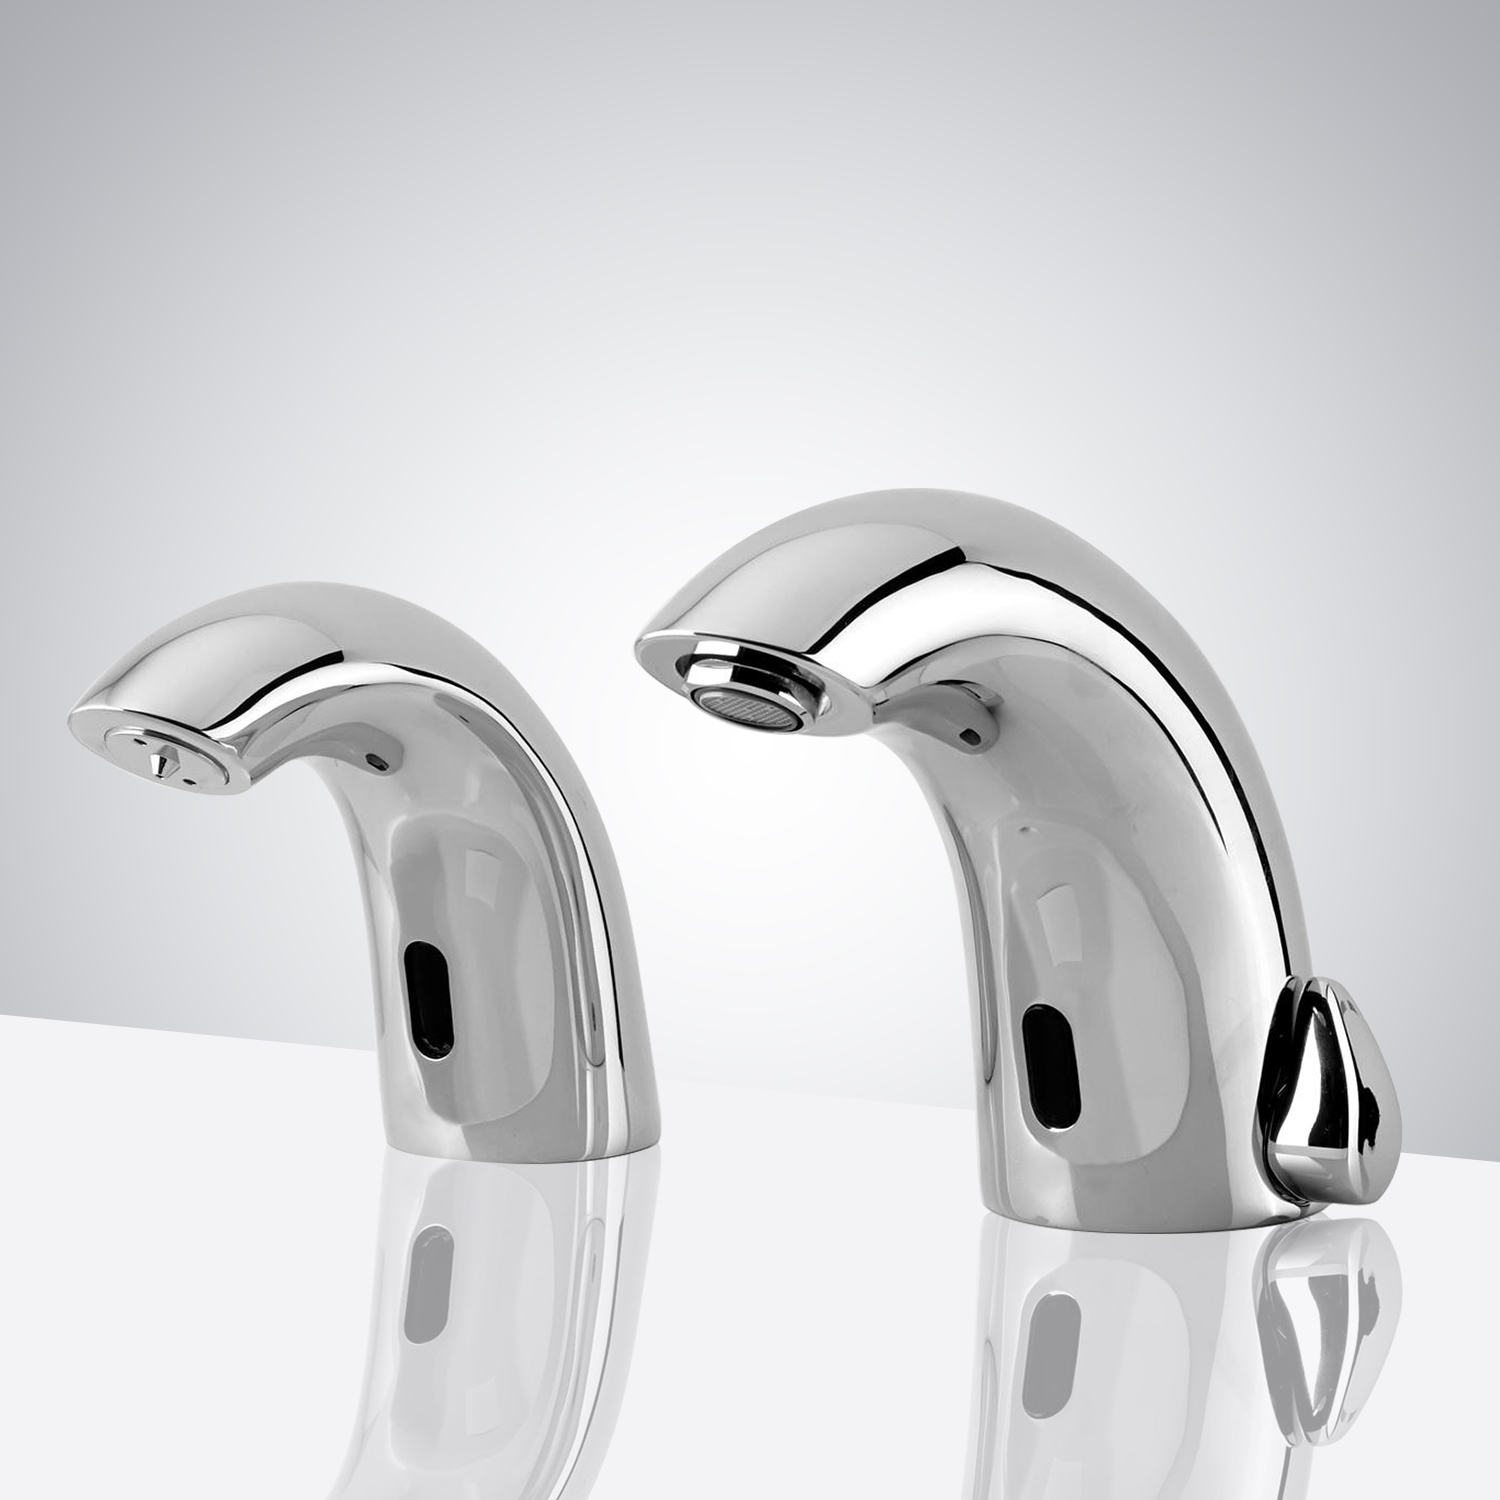 Fontana Chatou Motion Sensor Faucet & Automatic Soap Dispenser for Restrooms